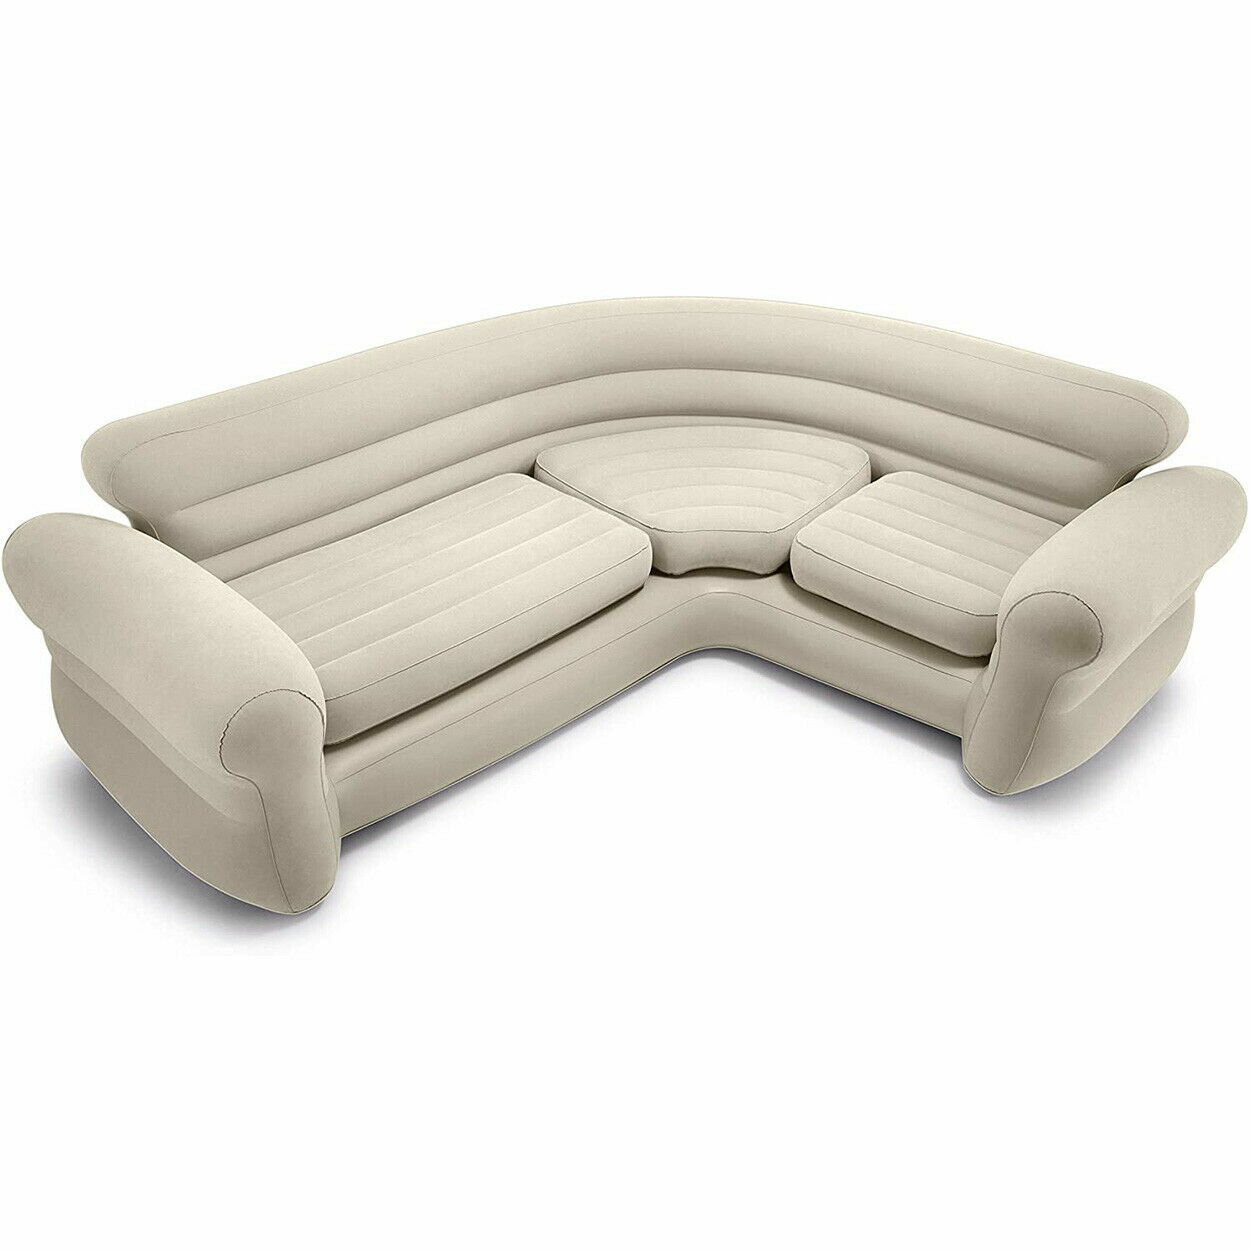 懶人沙發 INTEX68575雙人貴妃沙發 午休躺椅轉角懶人沙發充氣沙發床